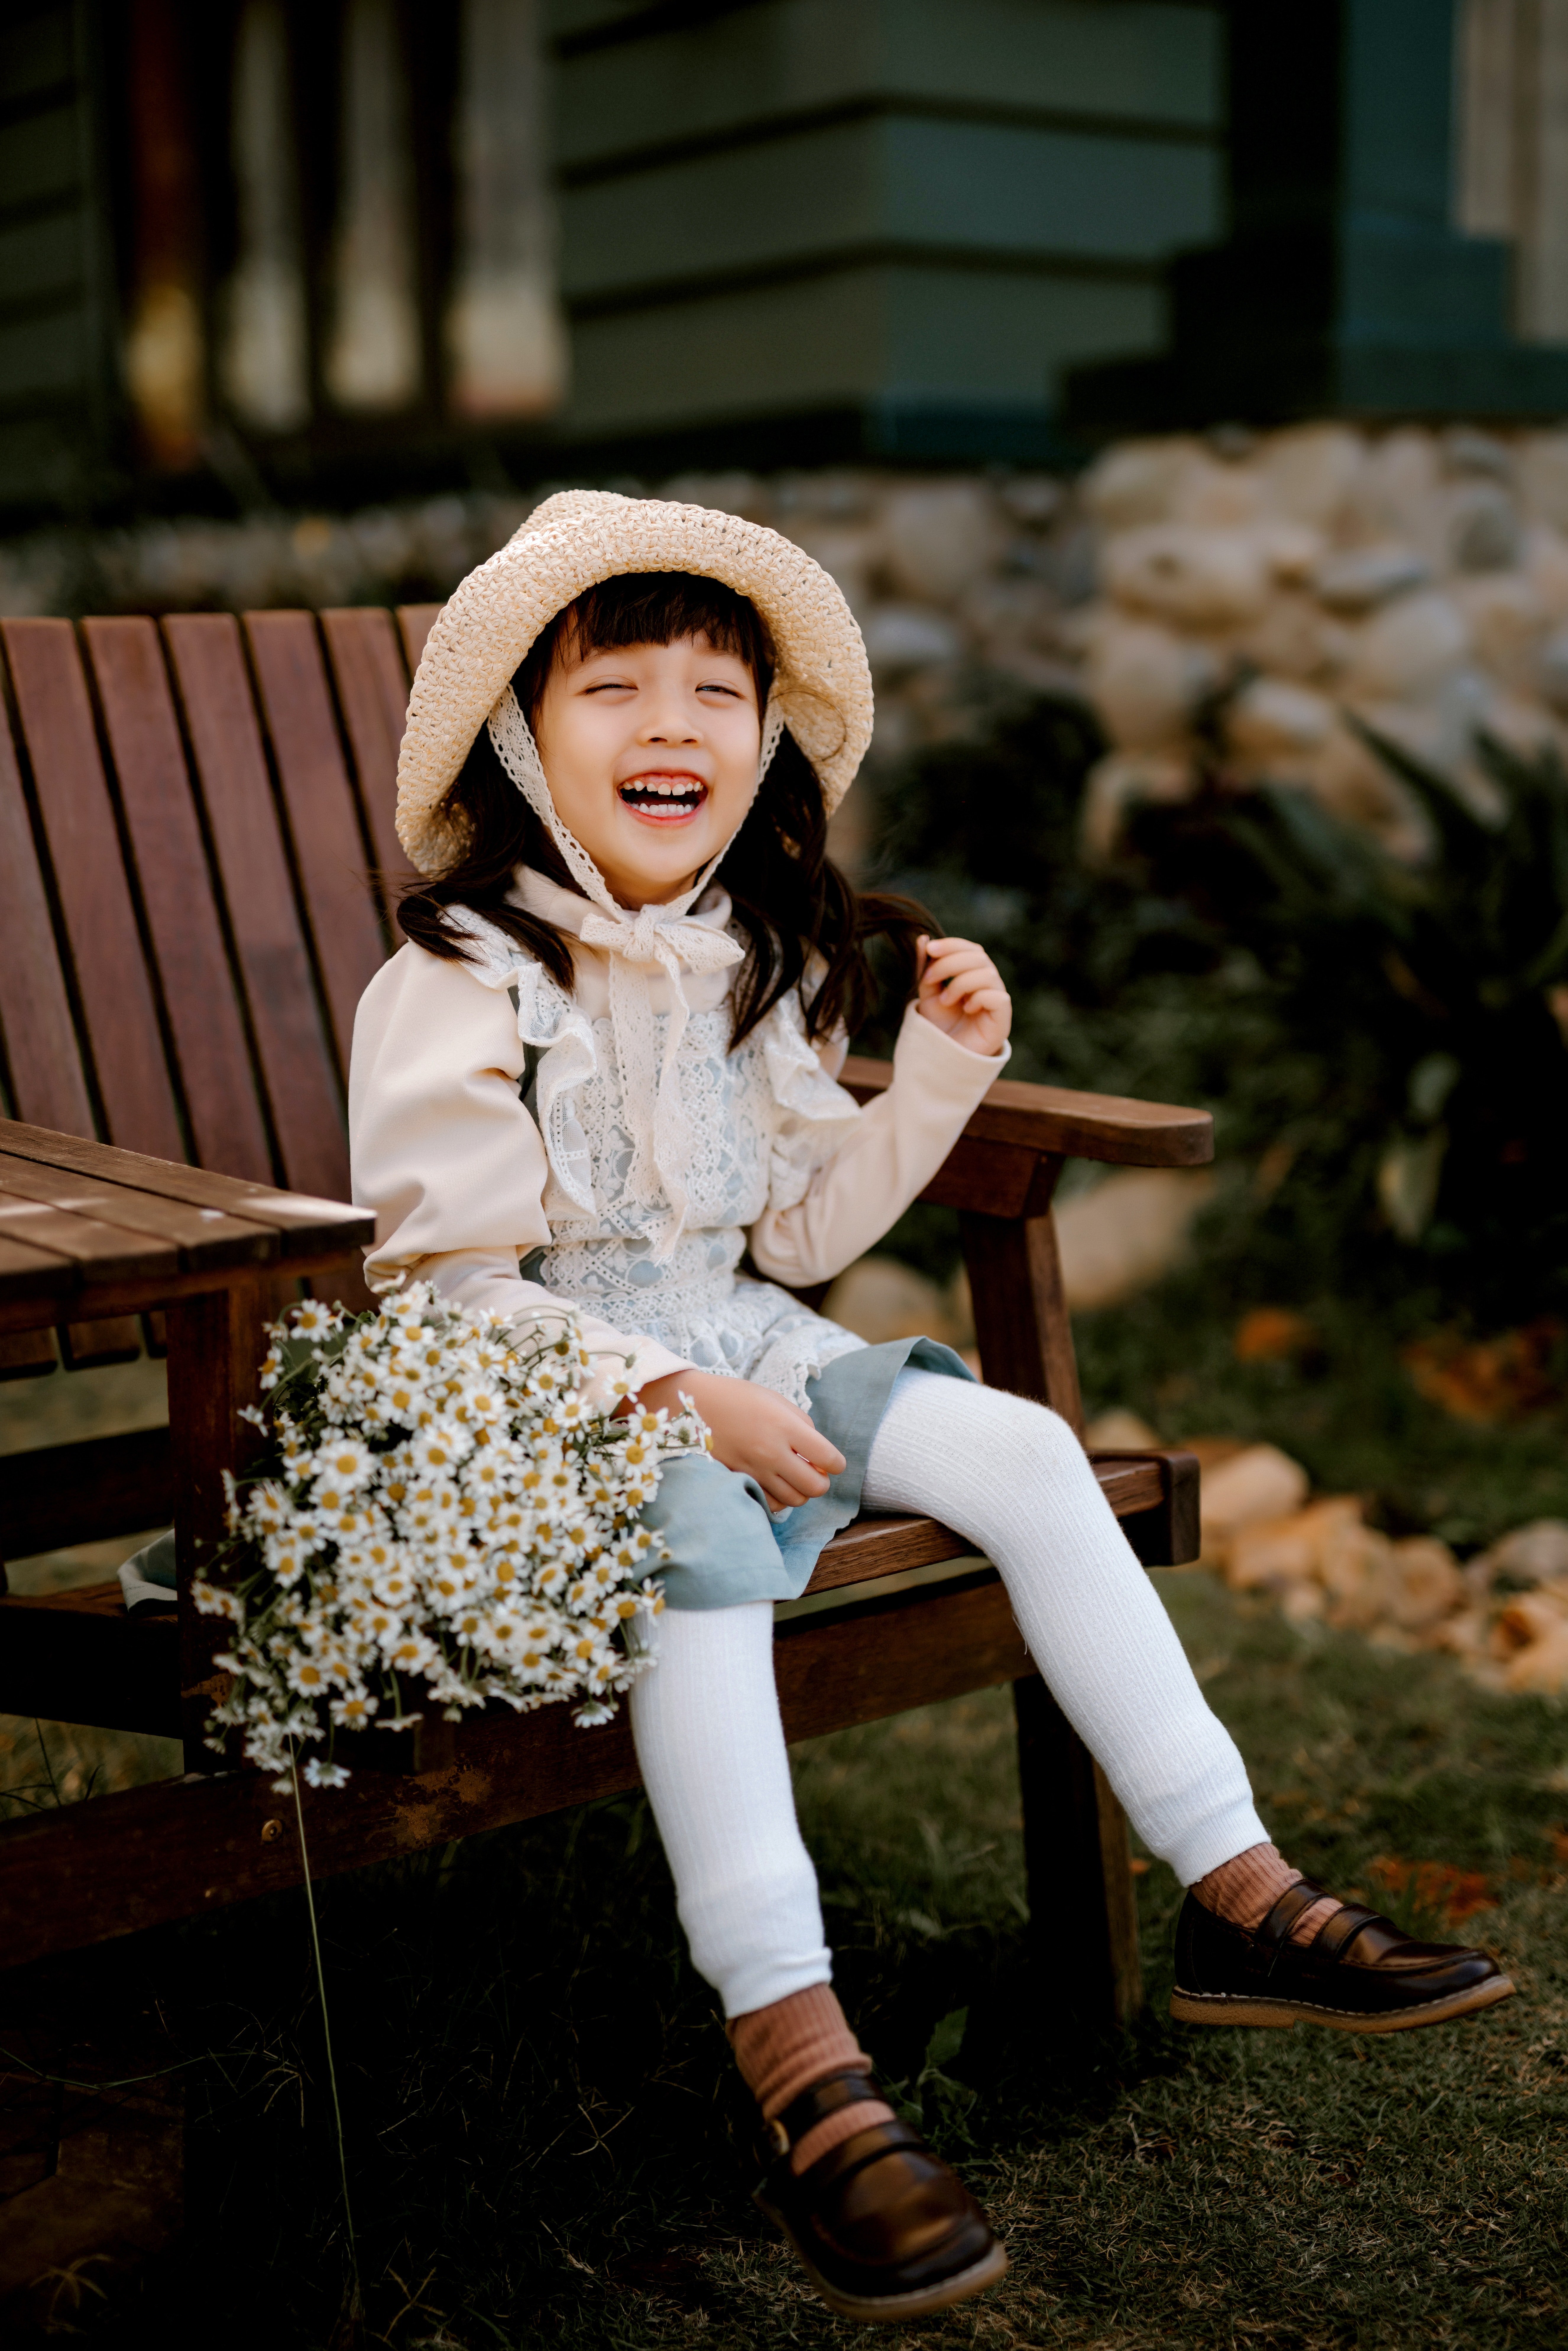 La petite fille s'asseyait toujours au même endroit pour vendre des fleurs. | Source : Pexels